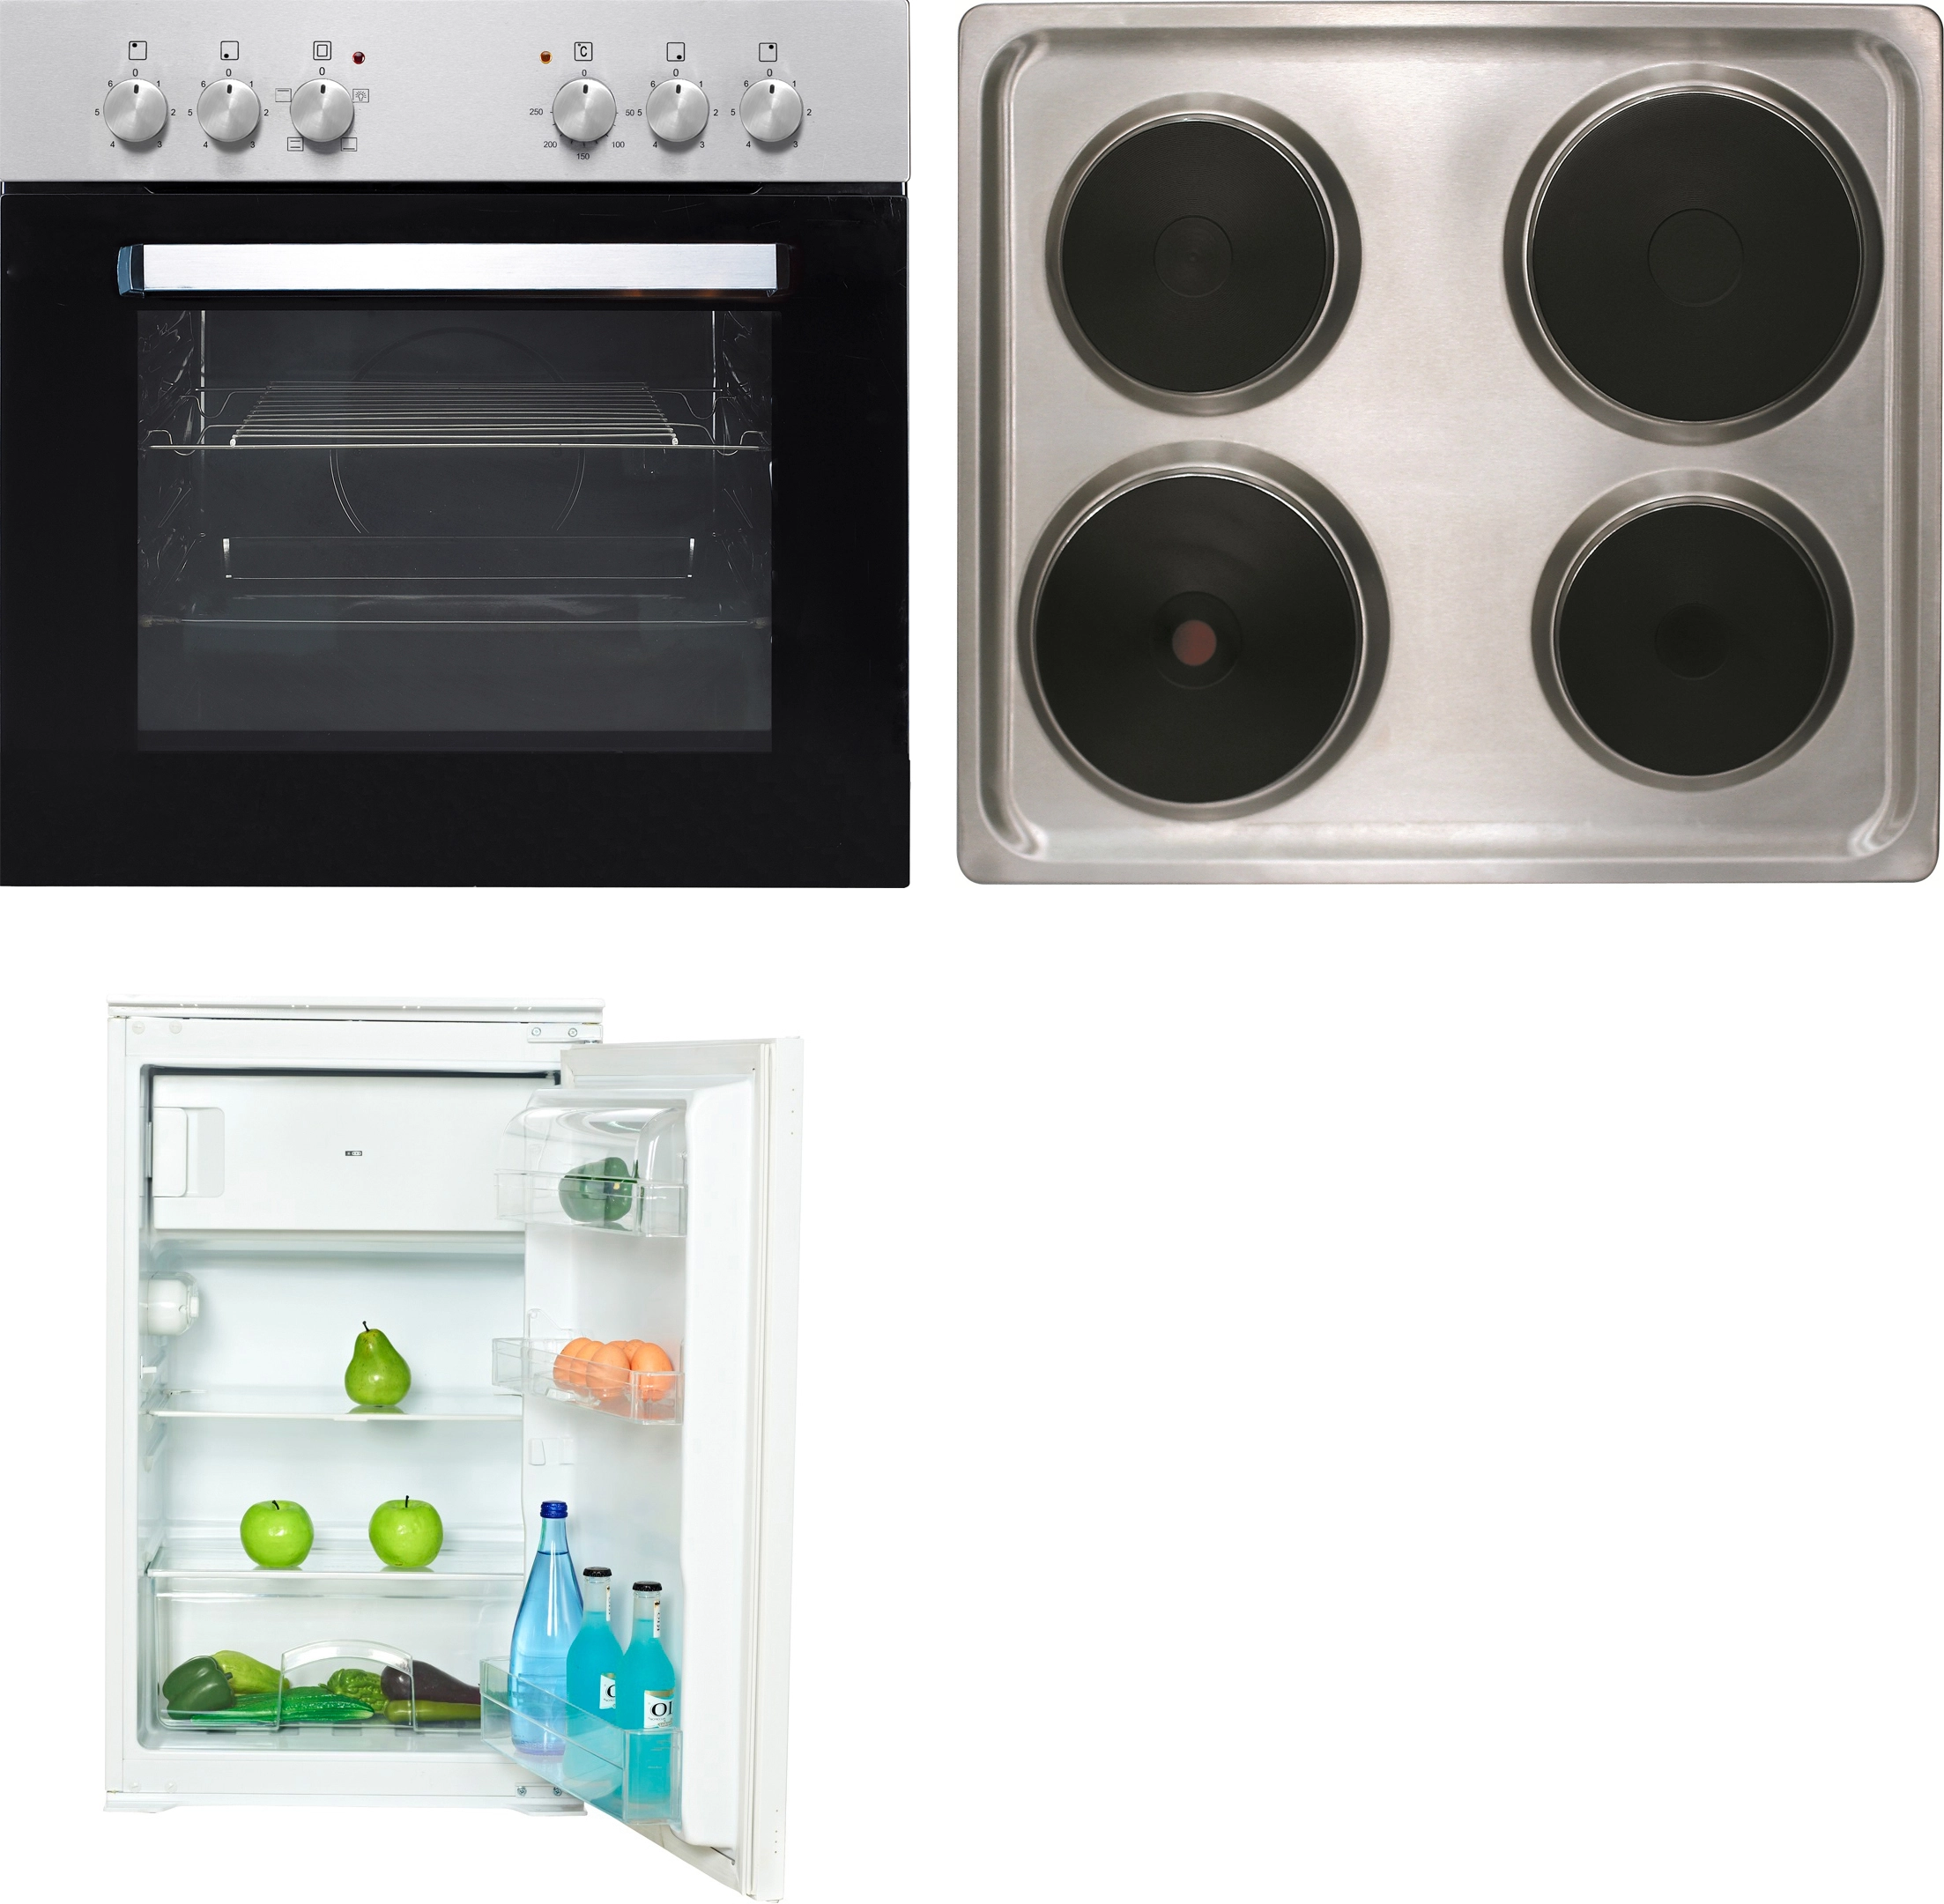 Flex-Well Küchengeräte-Set 1 mit Einbaukühlschrank und Einbauherd OBI kaufen bei